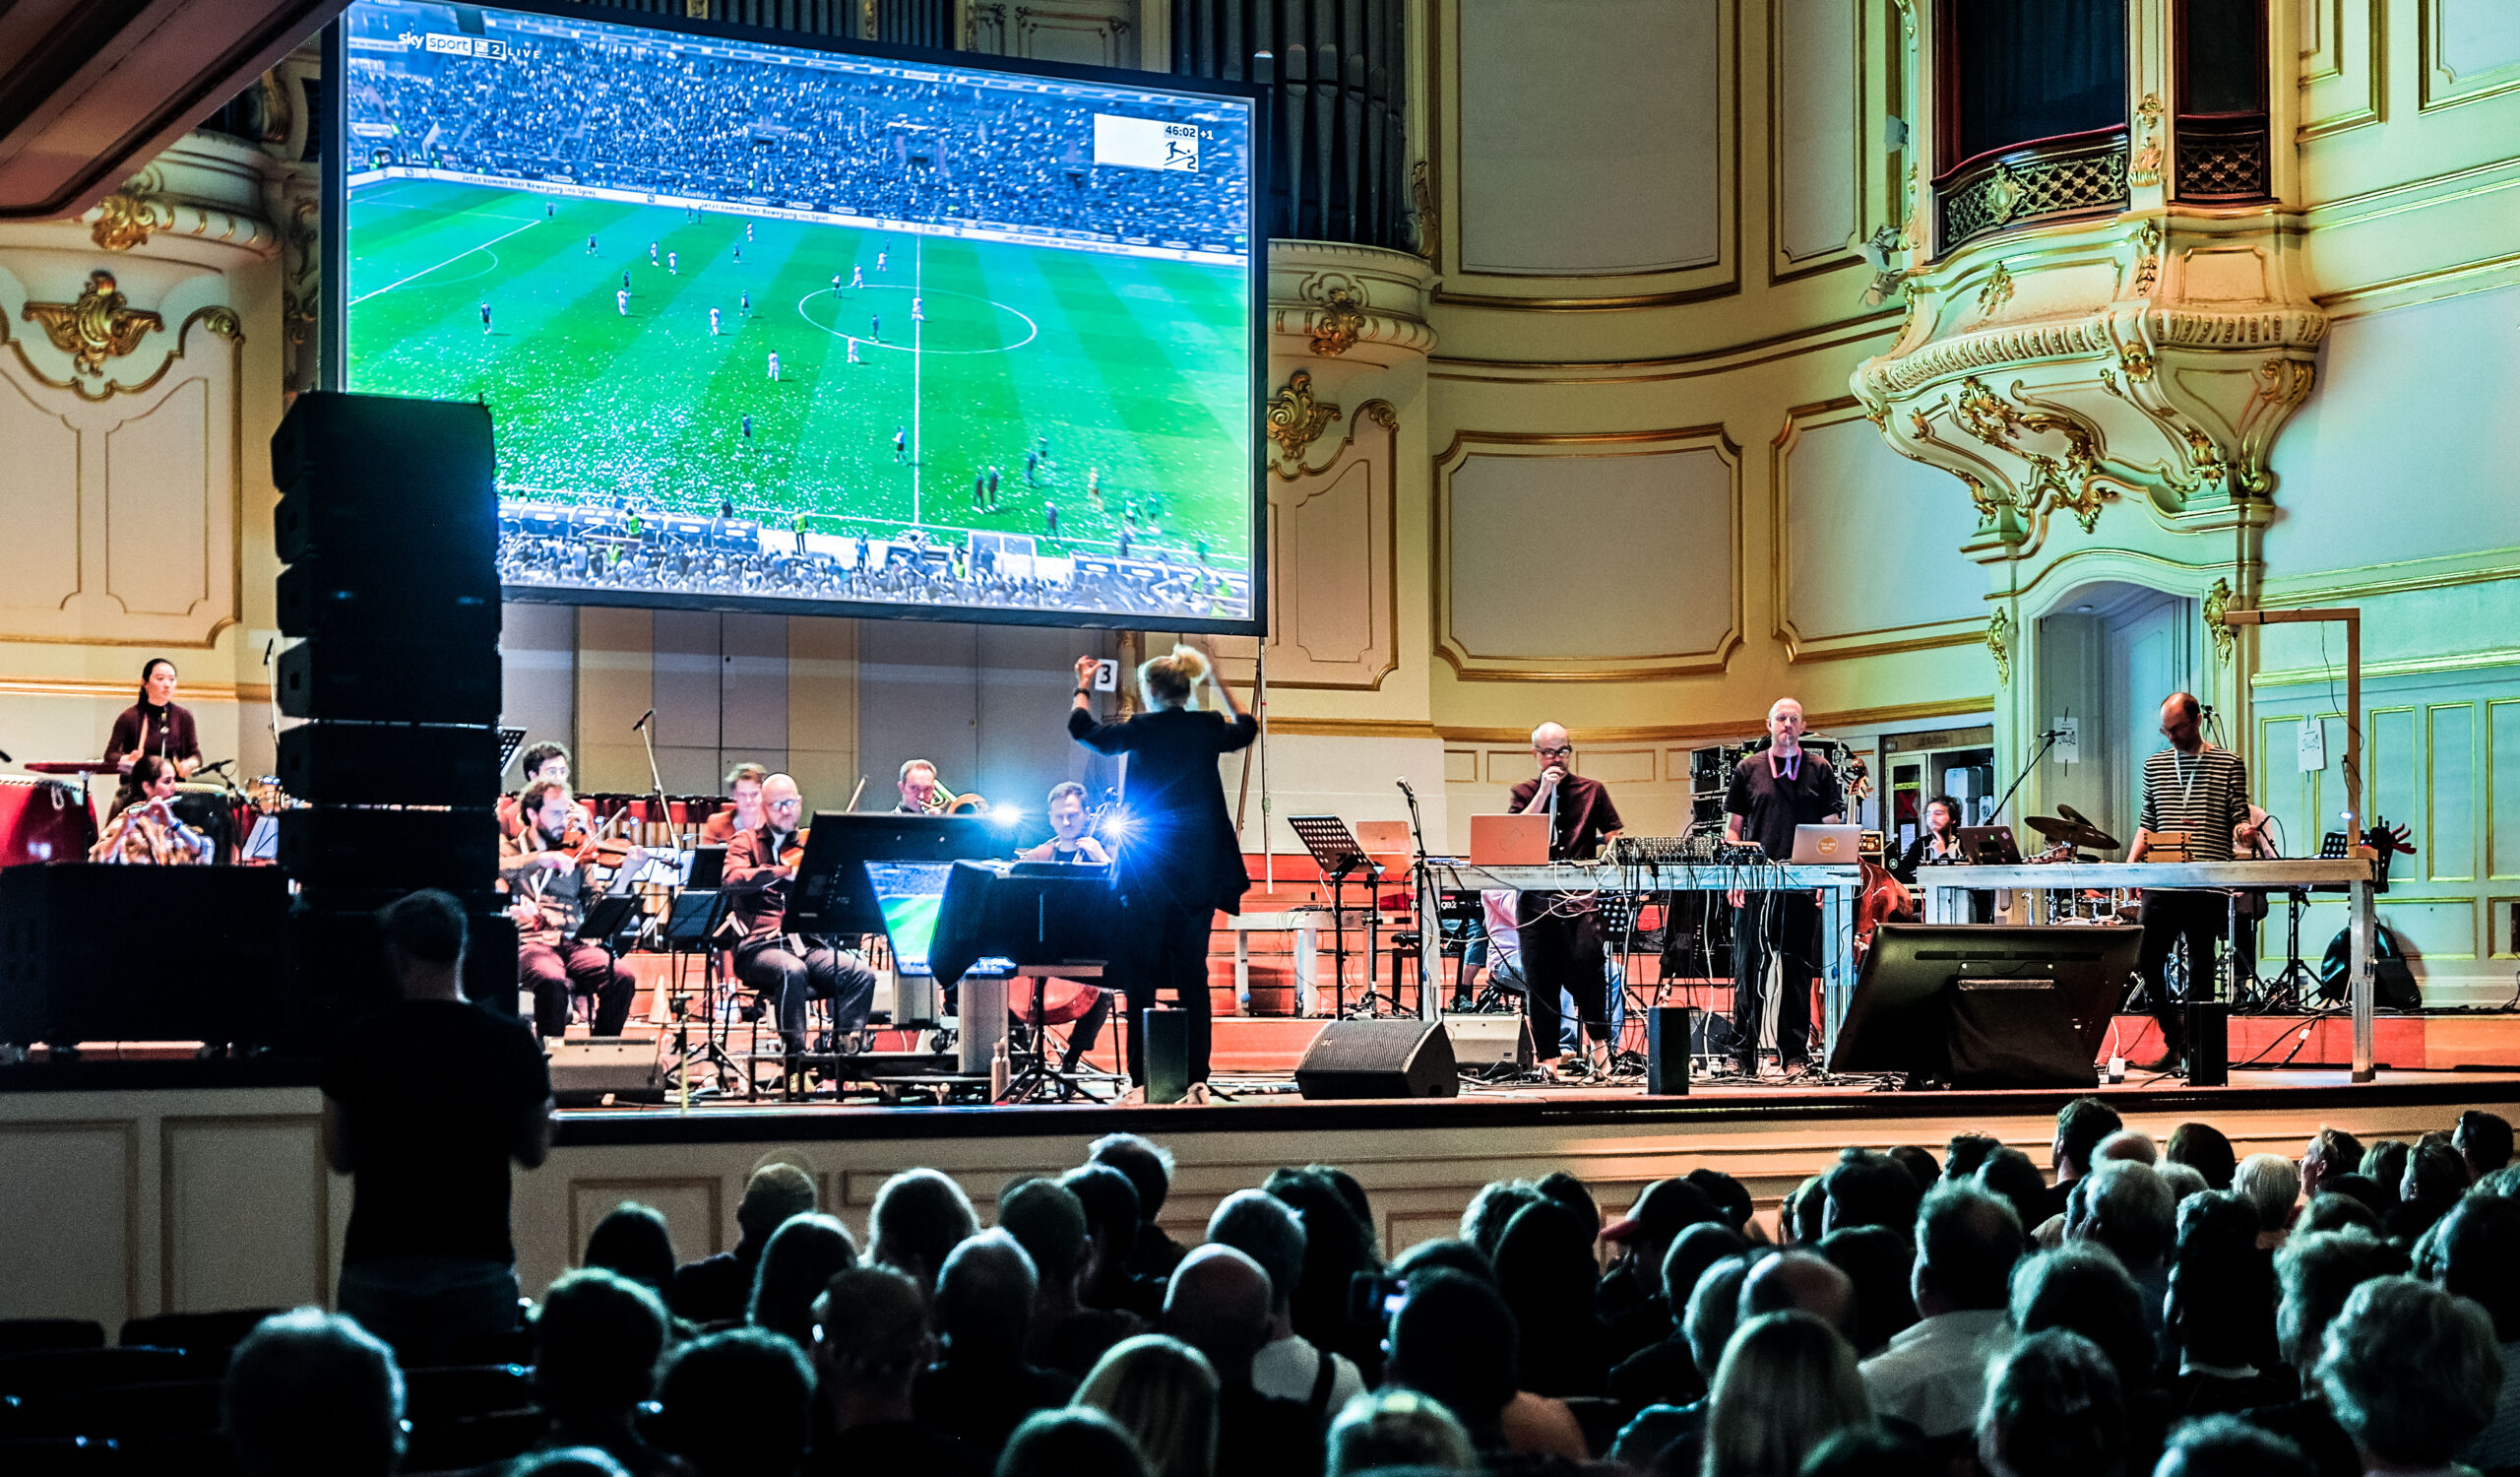 Großer Bildschirm mit Fußball auf der Bühne, davor Musiker